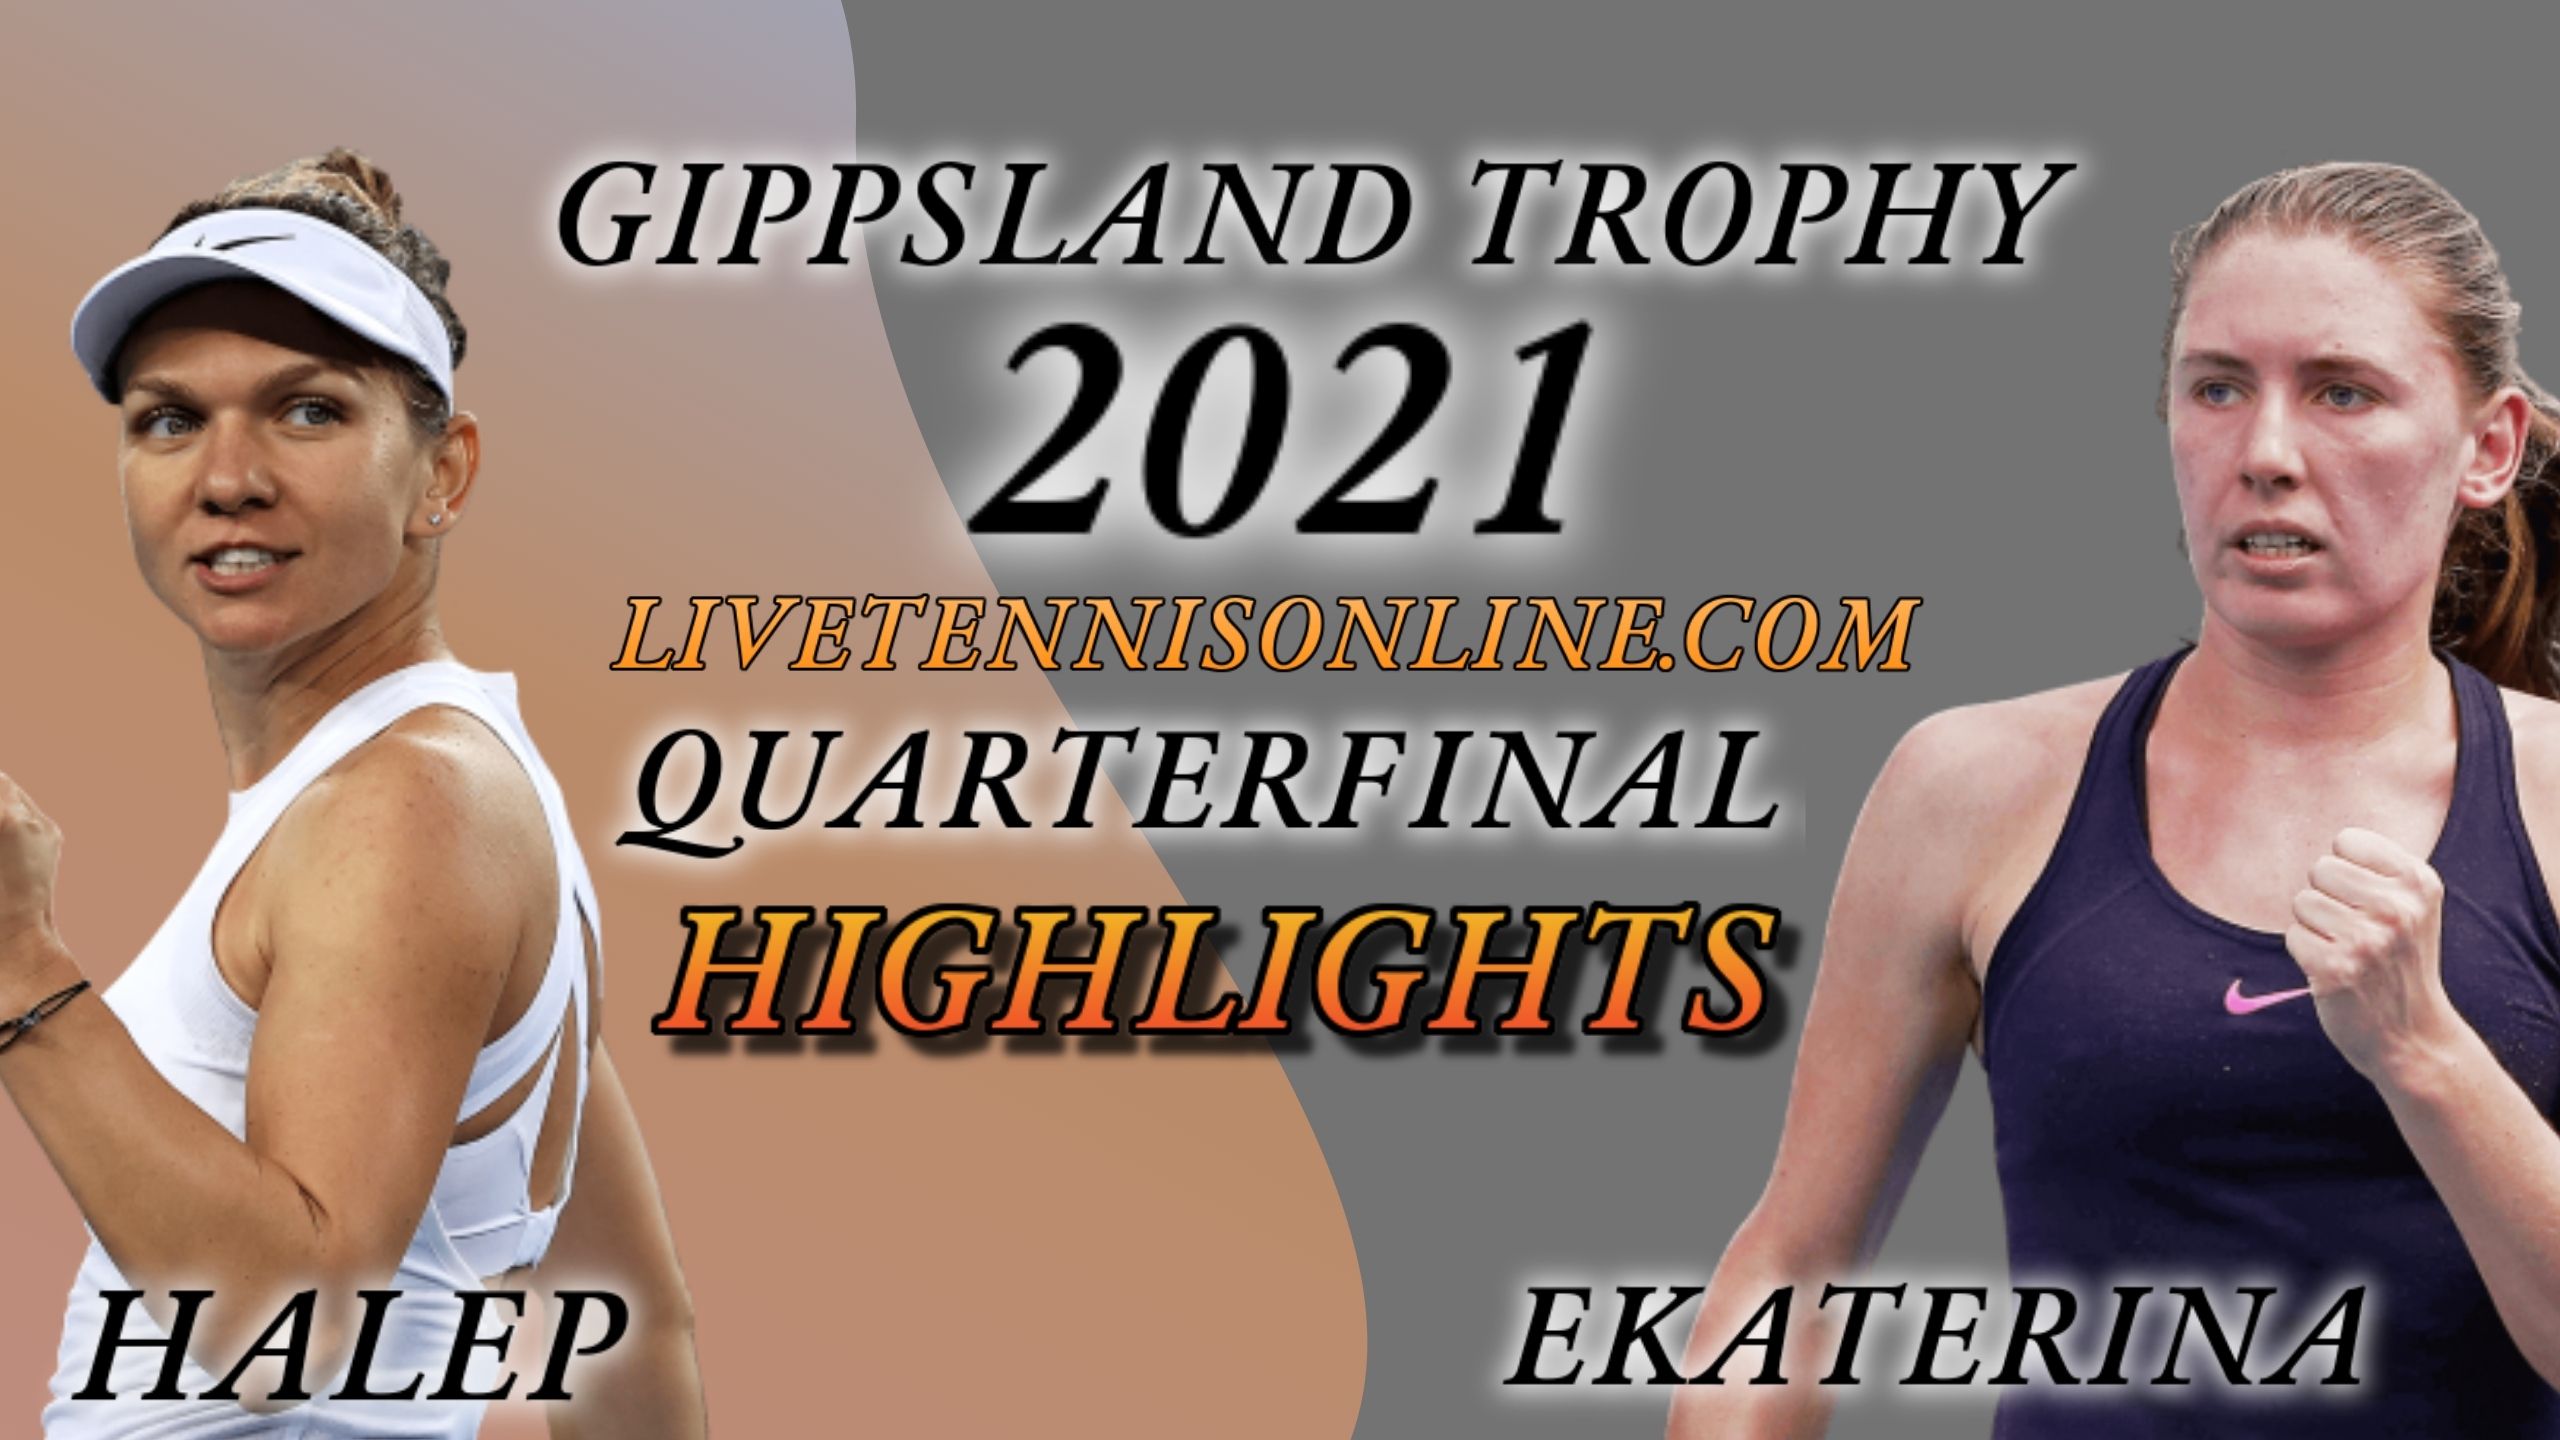 Halep Vs Alexandrova Quarterfinal Highlights 2021